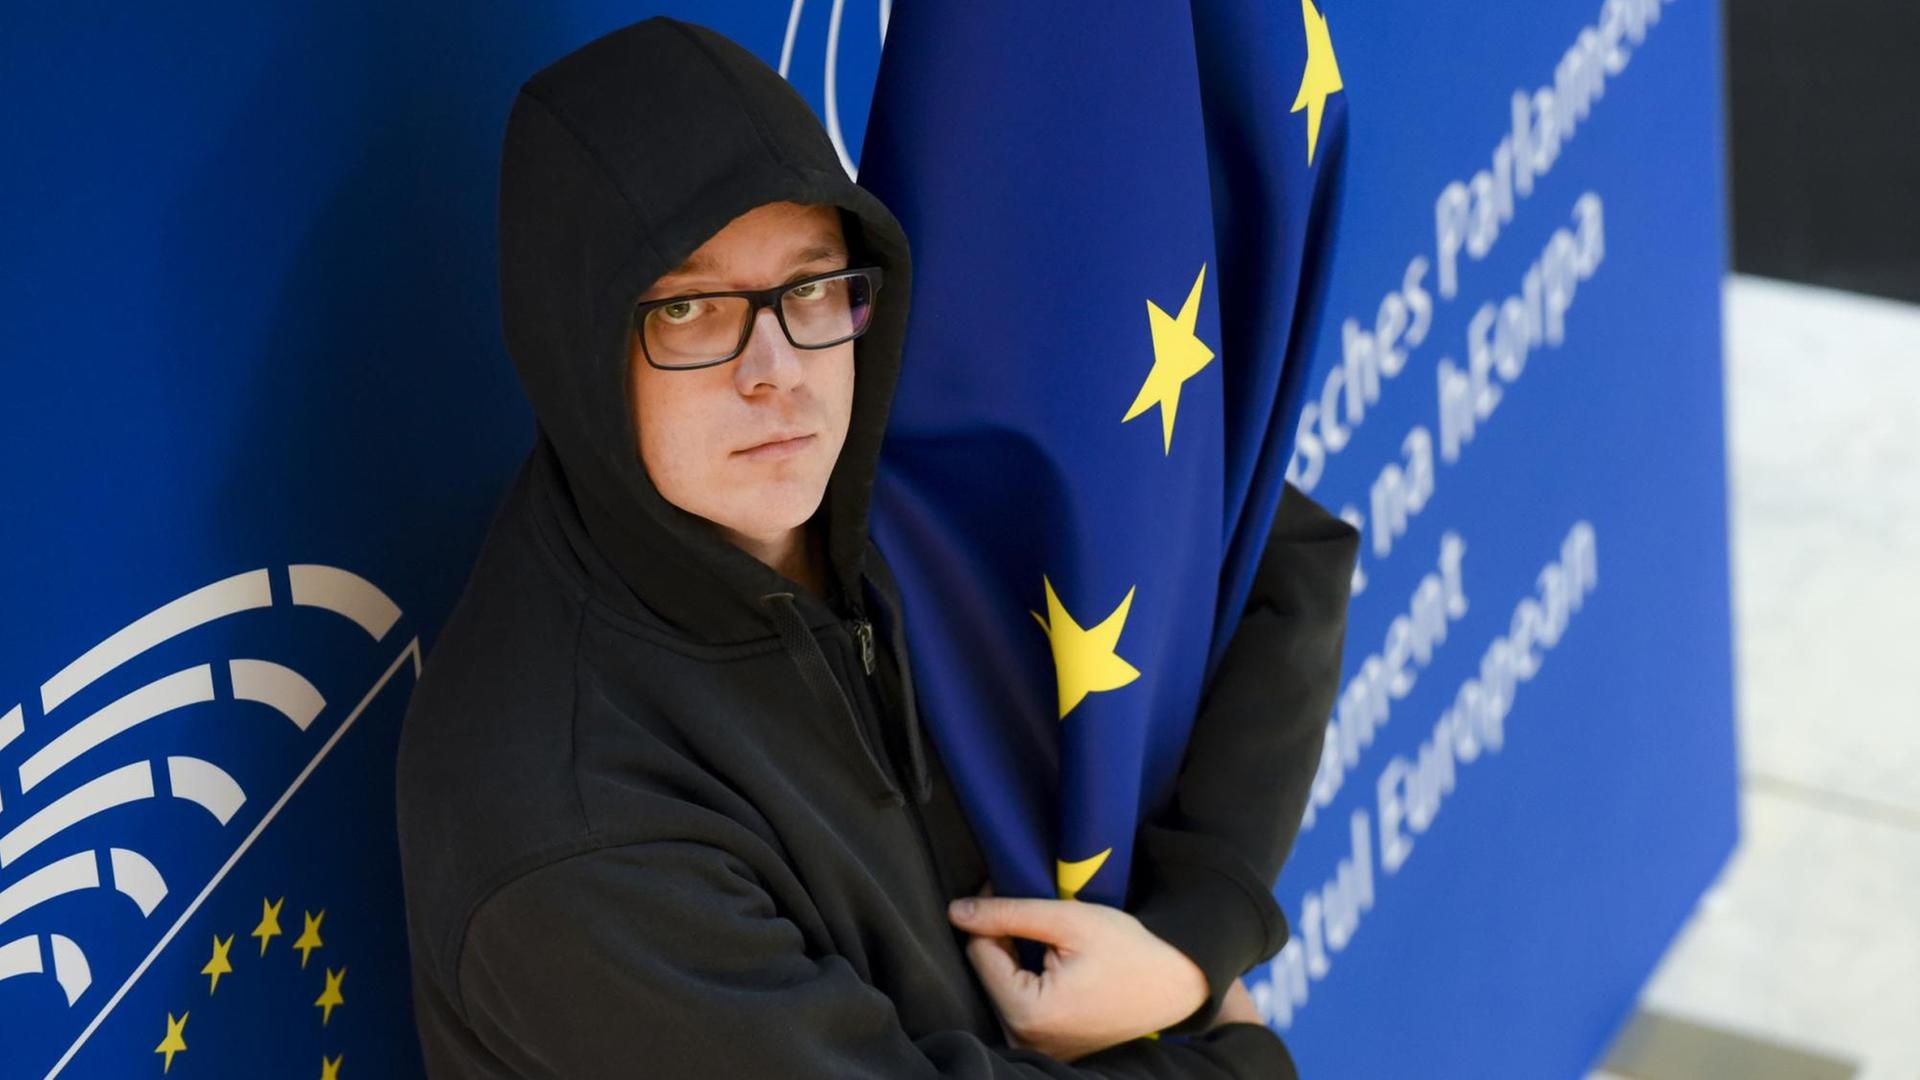 Der Satiriker und Politiker Nico Semsrott steht vor einer Wand im EU-Parlament